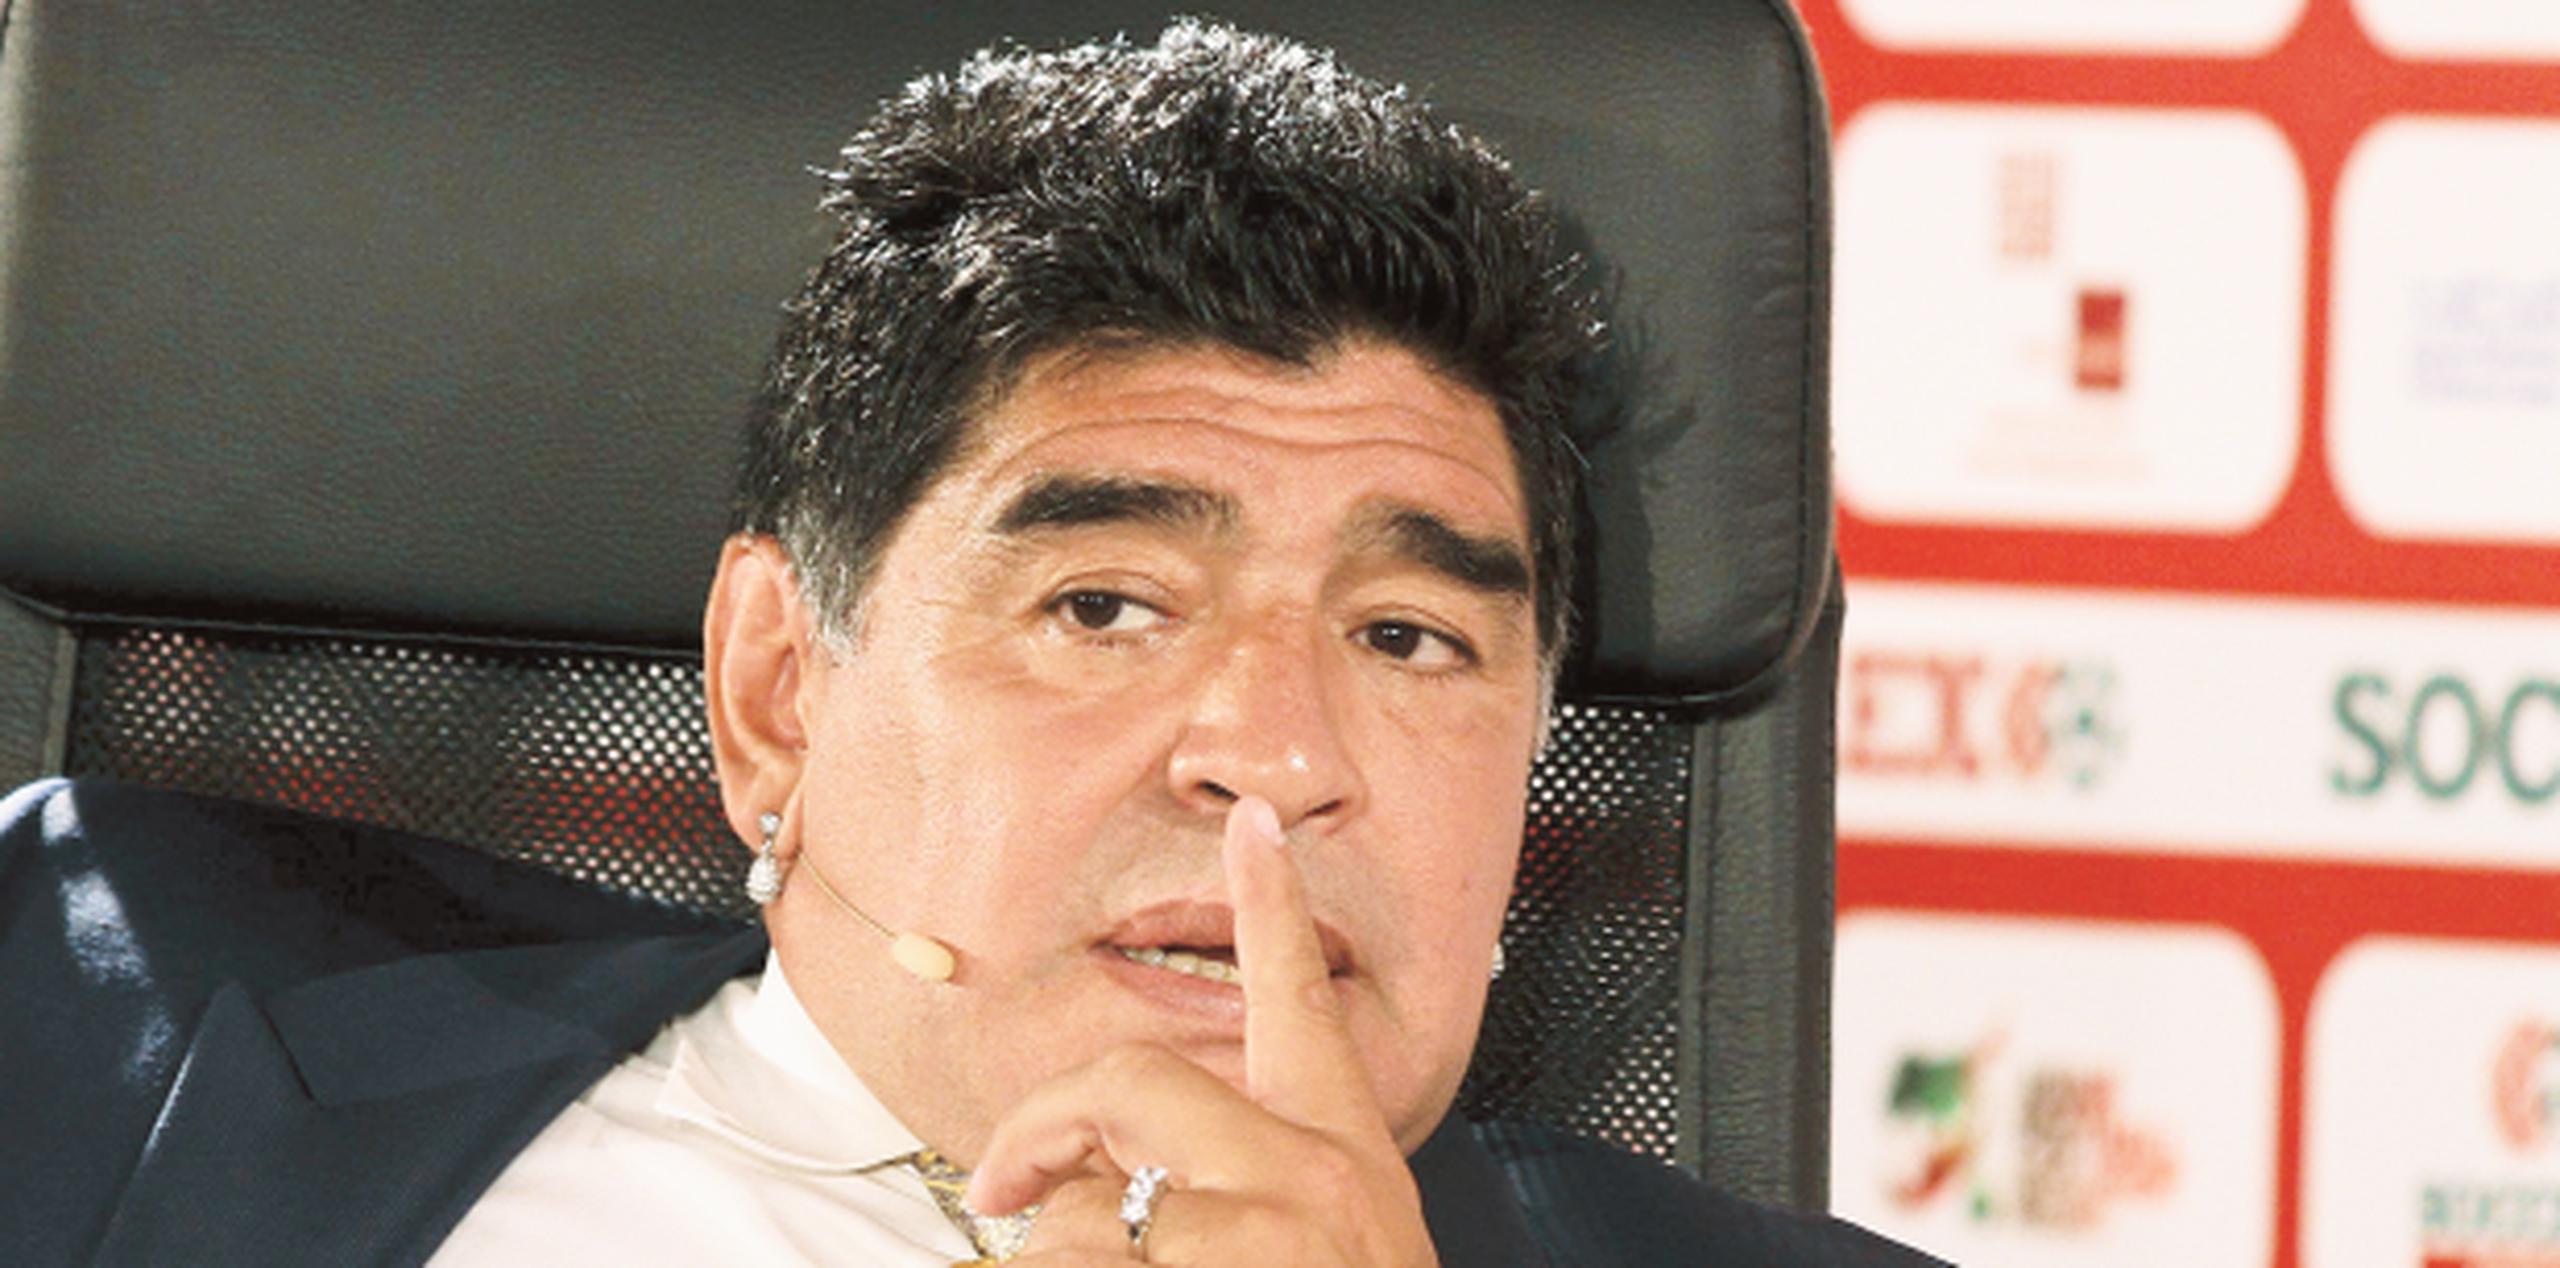 Diego Maradona afirmó que la FIFA de hoy, bajo el mando de Gianni Infantino, es "limpia y transparente". (Archivo)